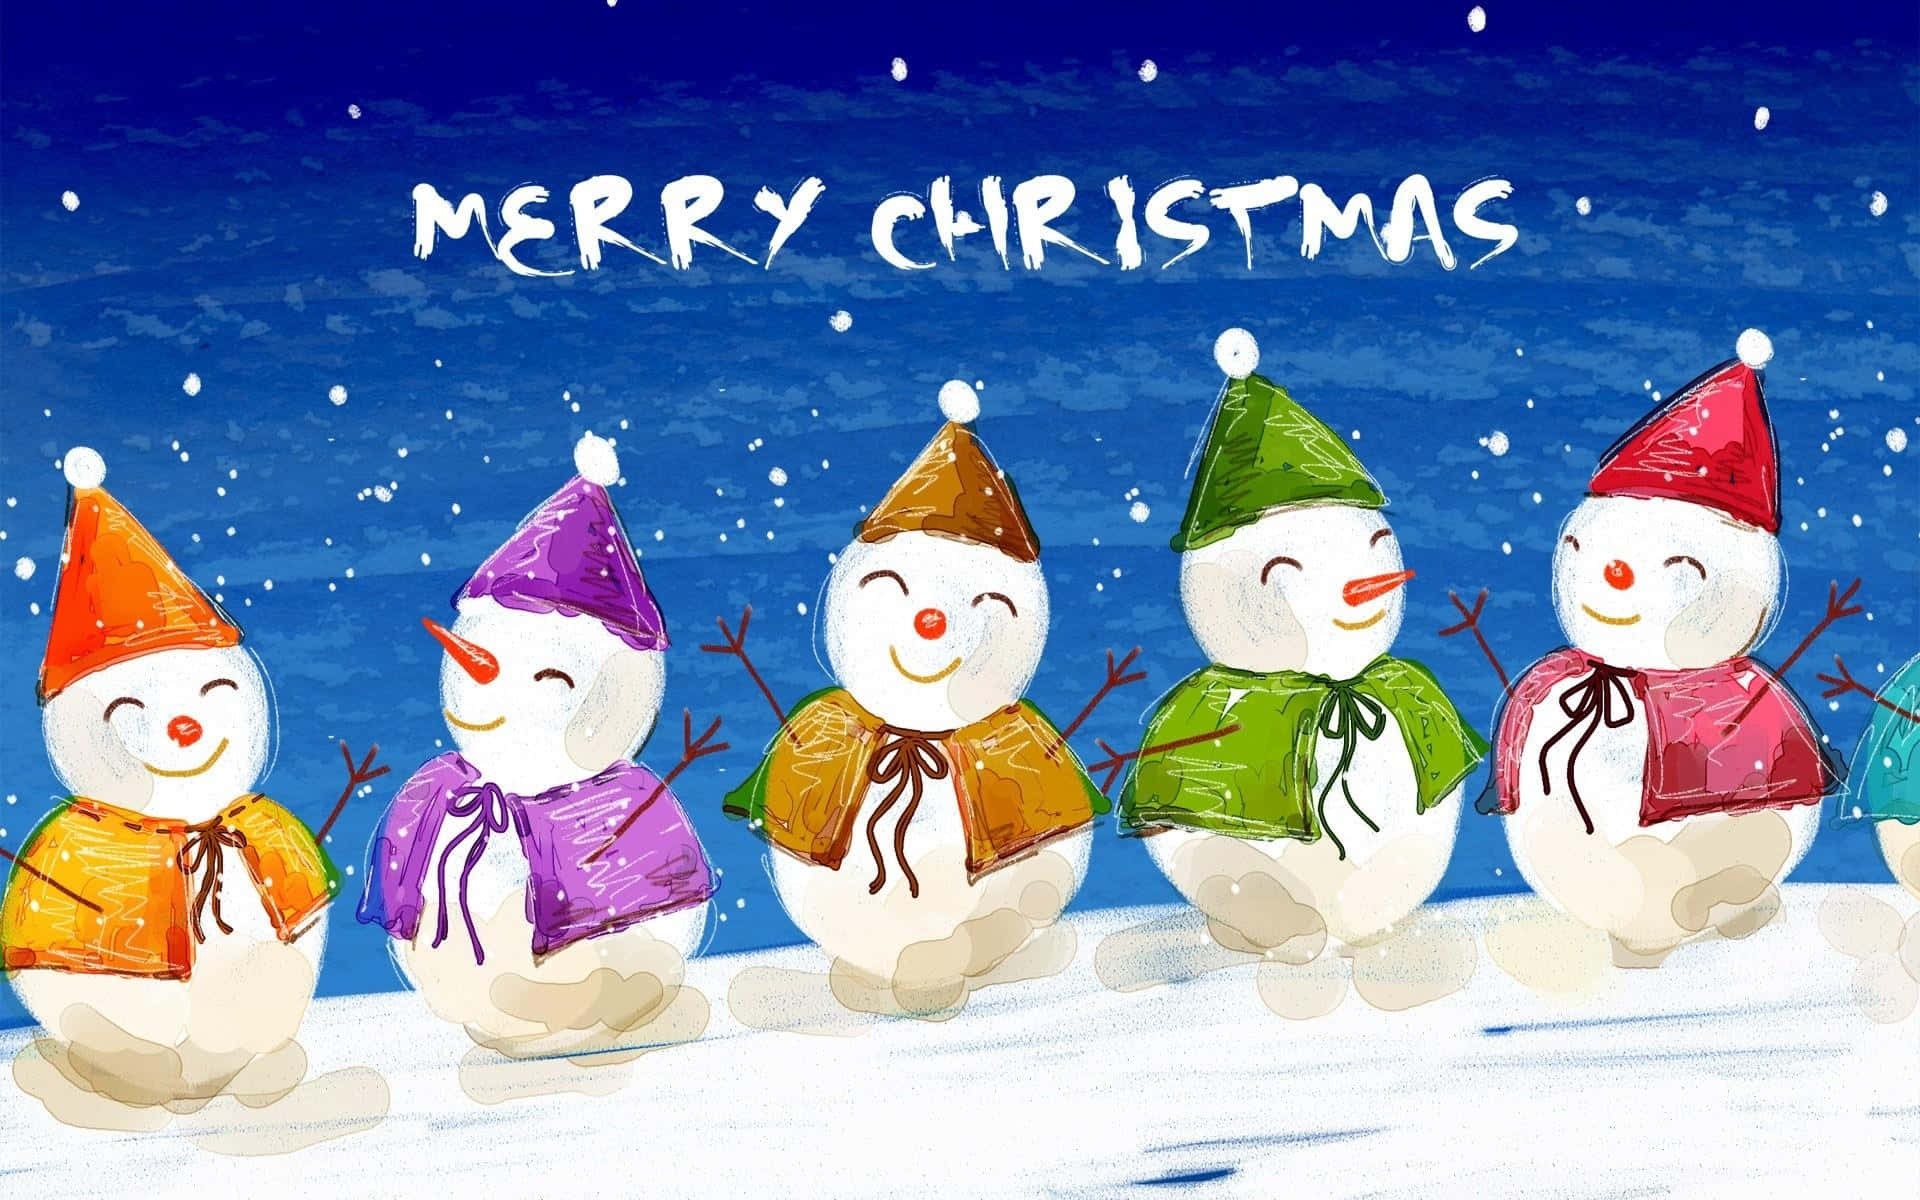 Cartoondi Natale: Immagine Di Amici Pupazzi Di Neve Per Le Vacanze.